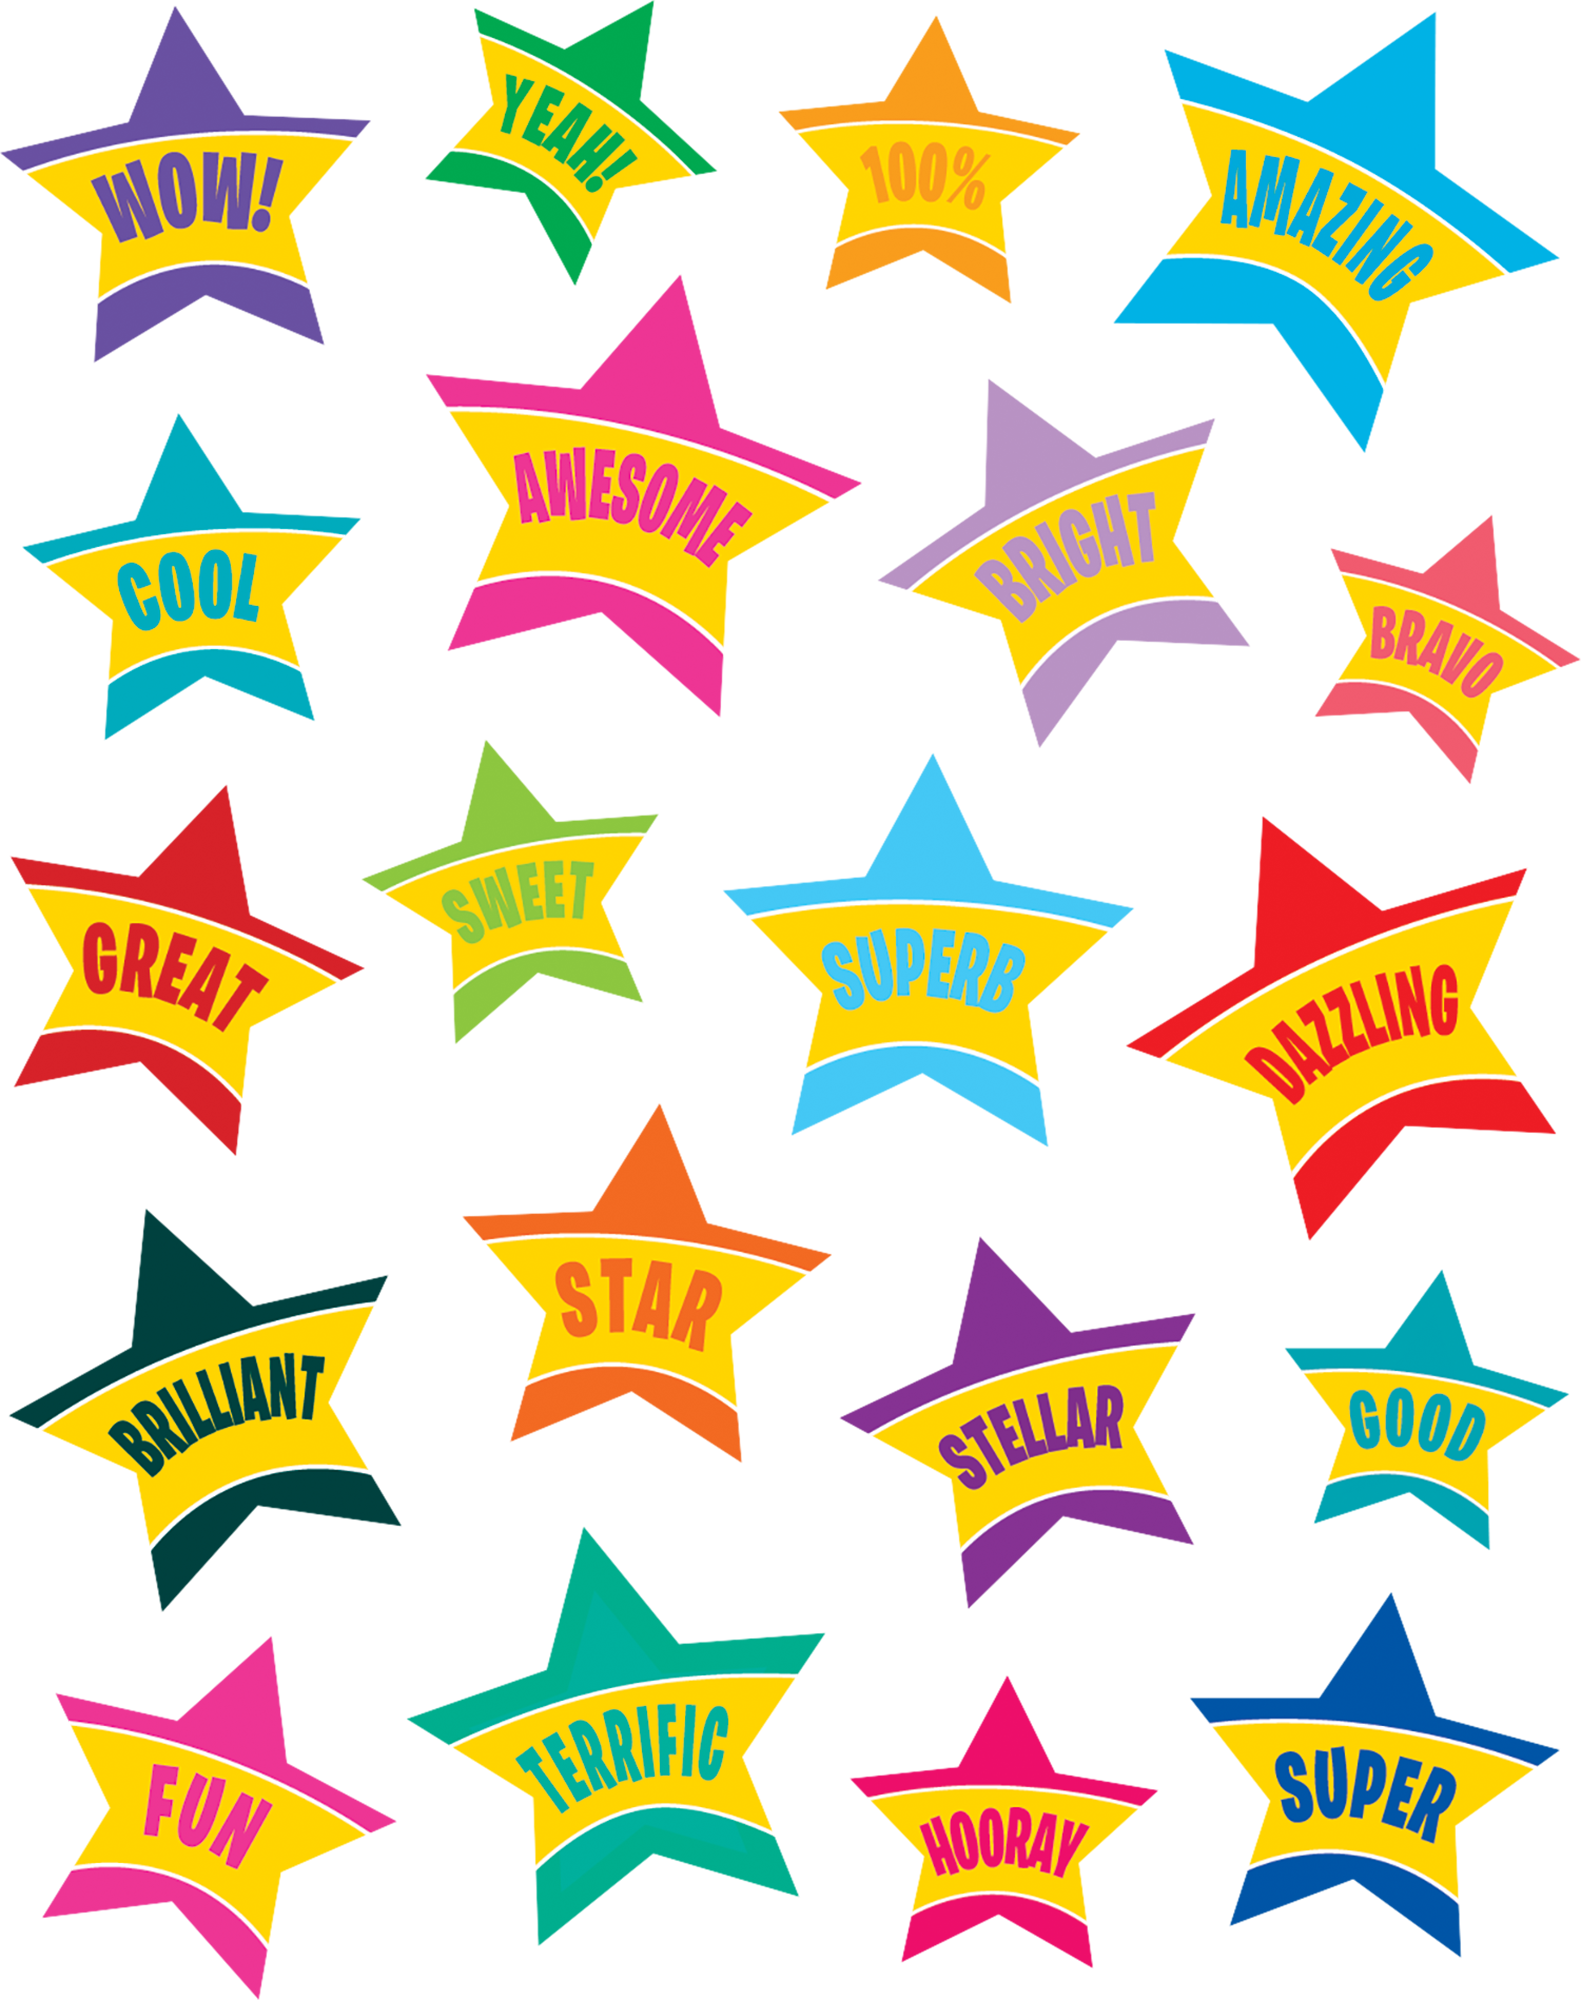 Star Rewards Stickers